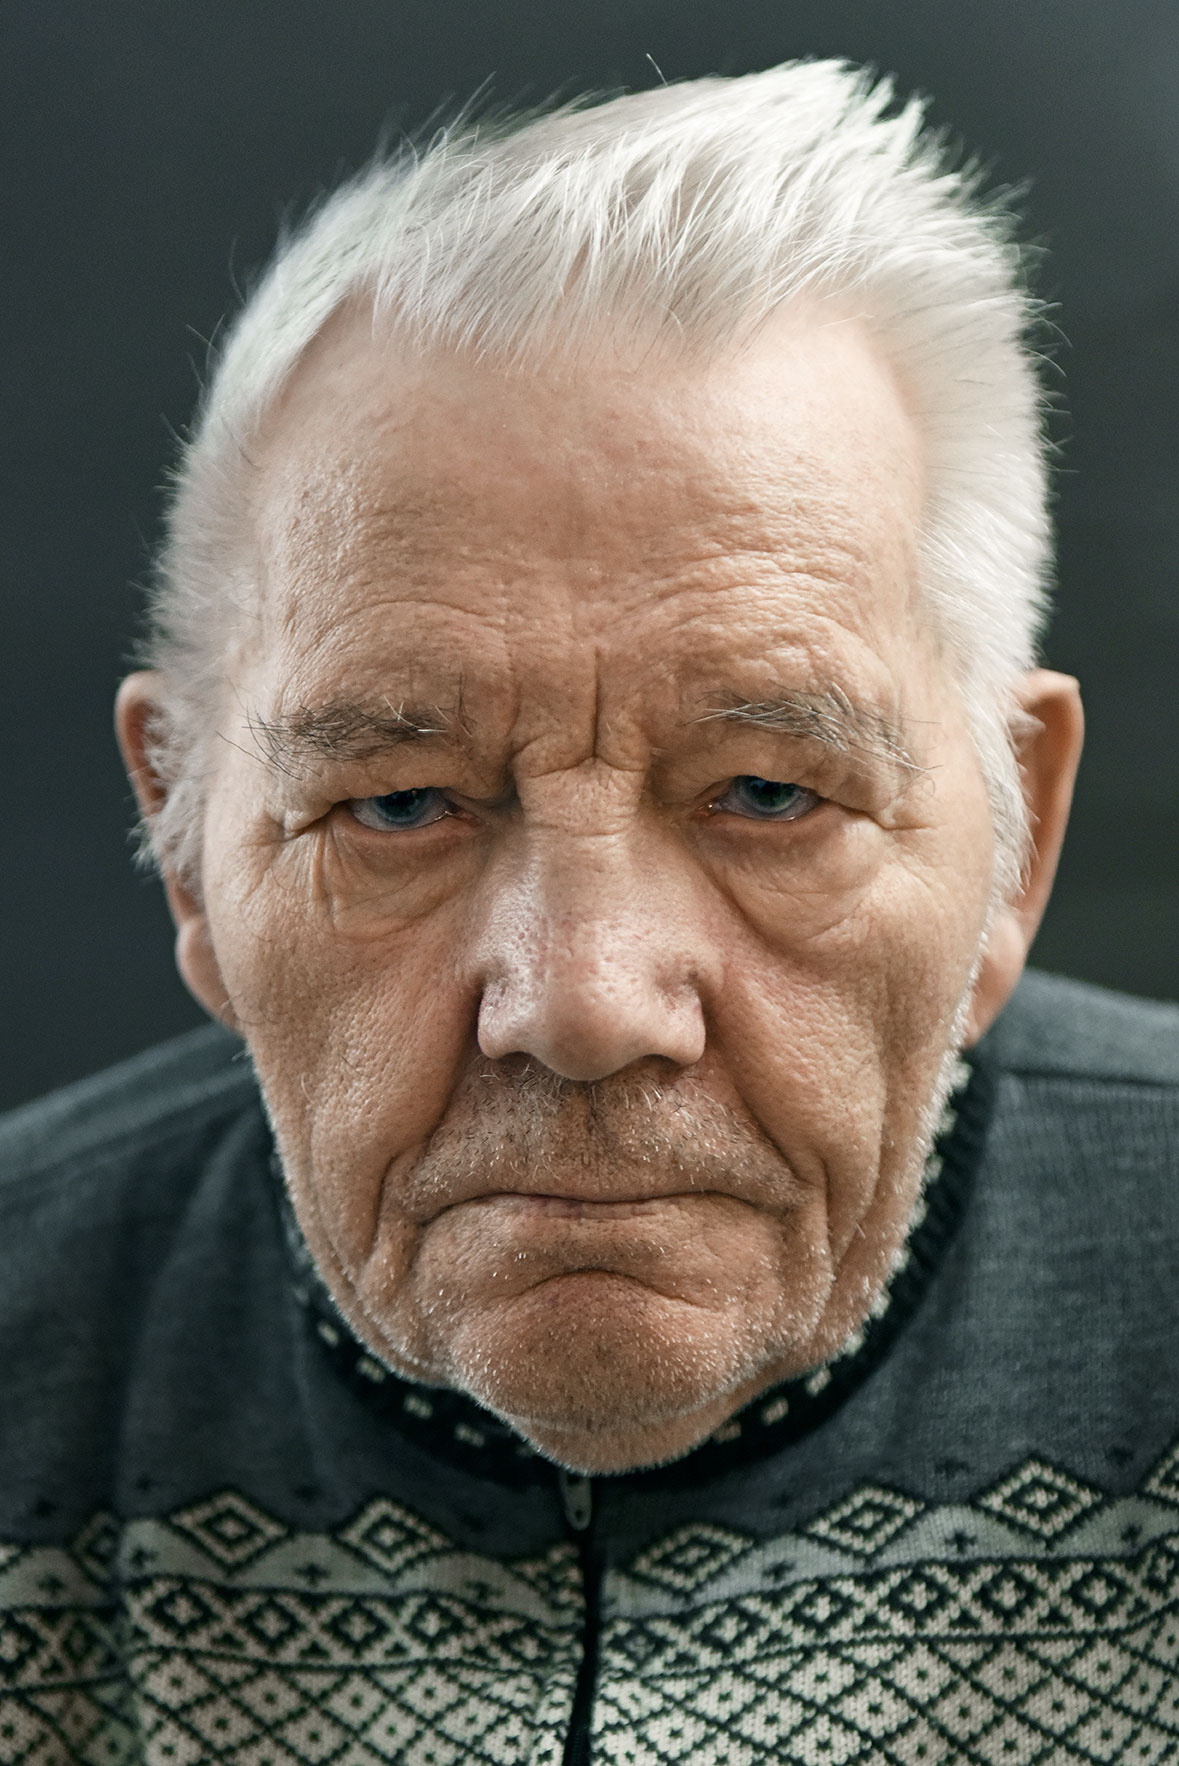 Old man face. Портрет пожилого мужчины. Лицо старика. Лицо пожилого человека. Лица пожилых людей.